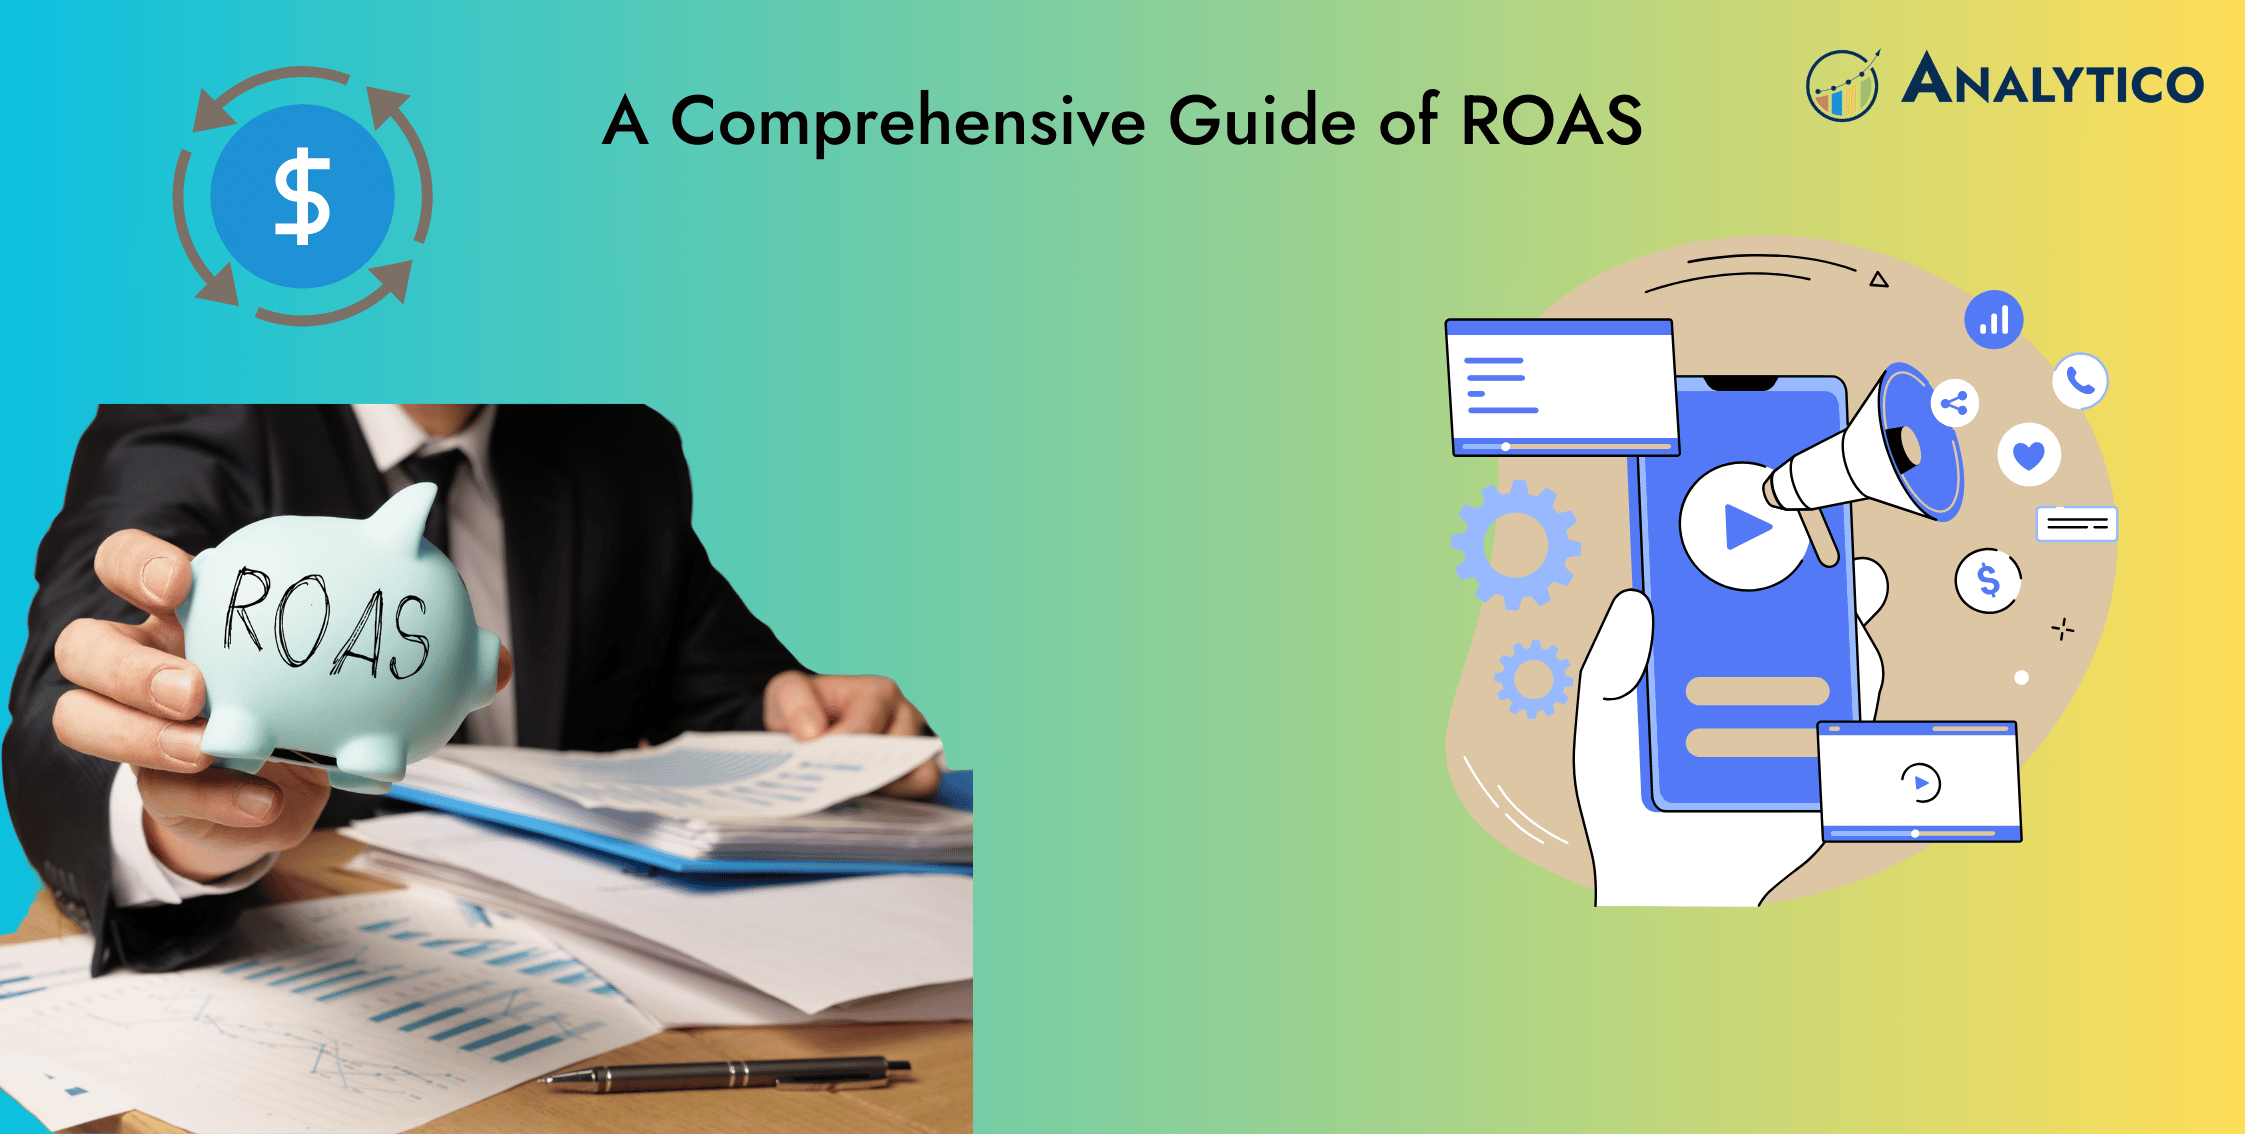 A Comprehensive Guide to ROAS